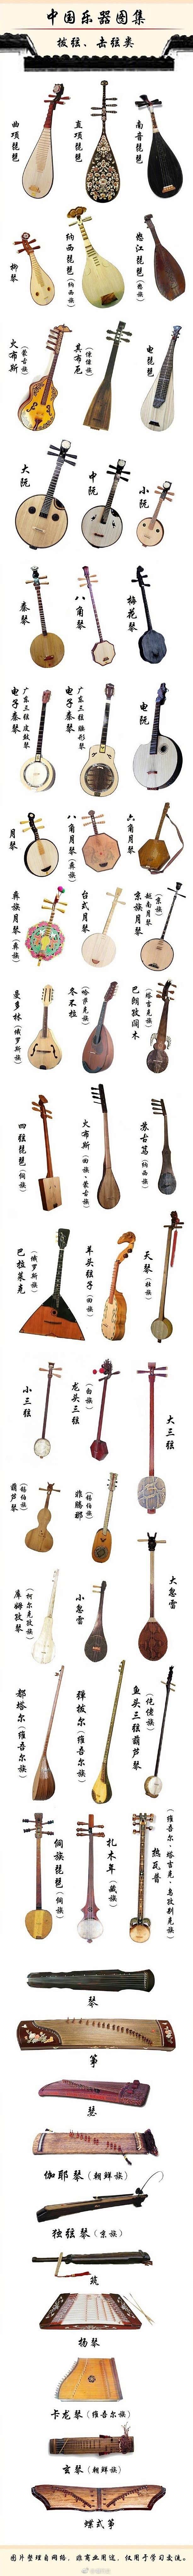 中国乐器-f666712f87b0369...